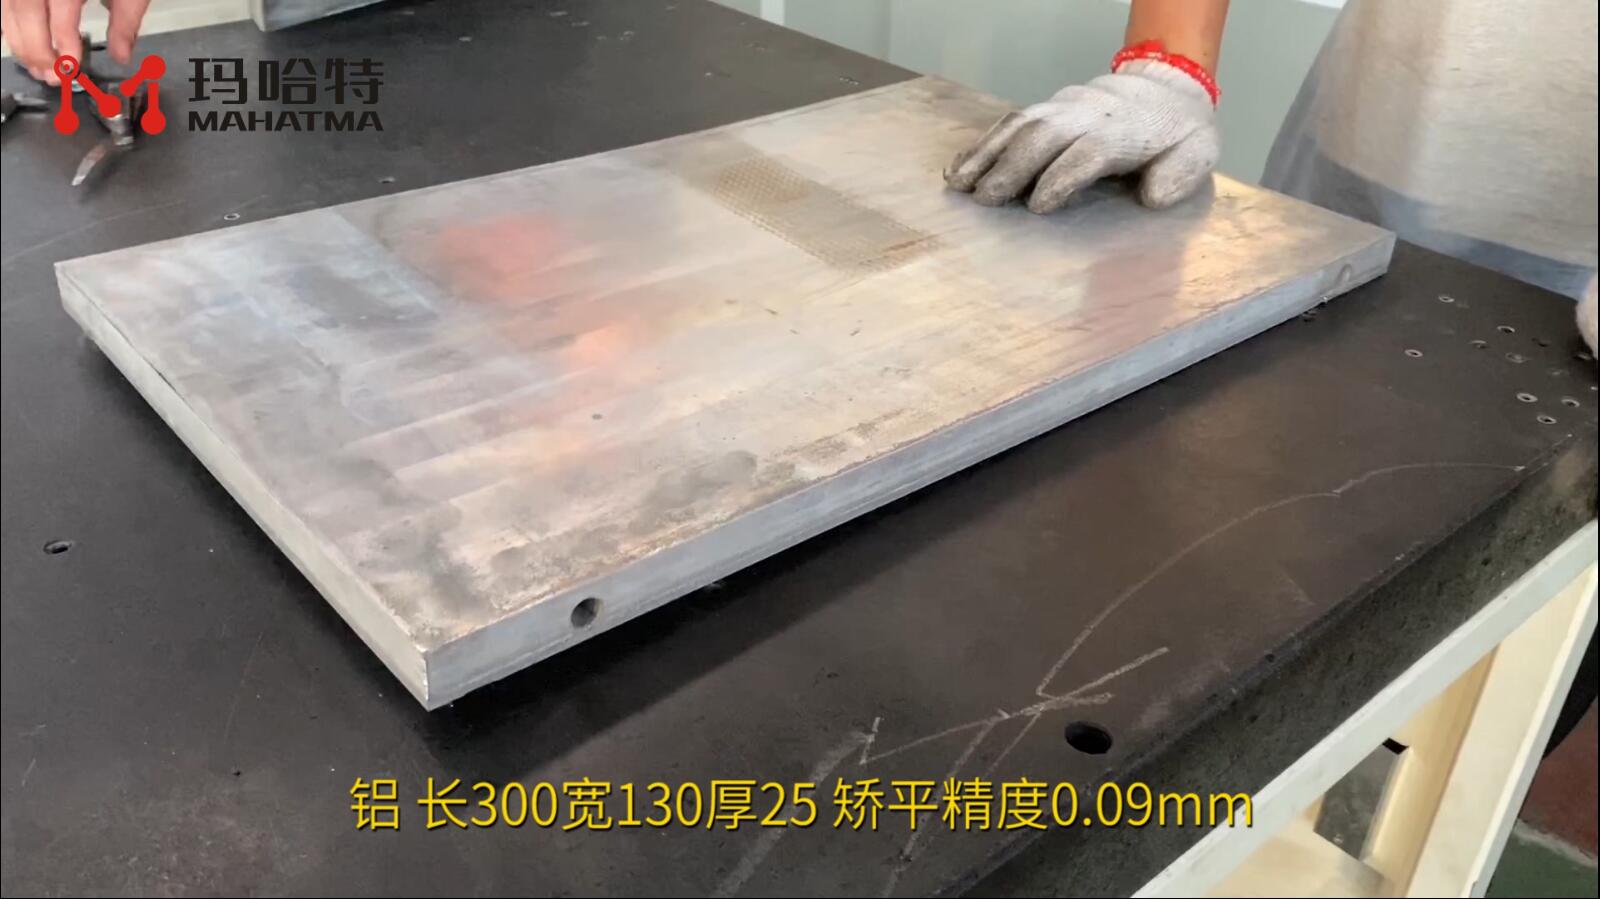 铝 MHT150-800 长方形 长300宽130厚25 矫平精度0.09mm